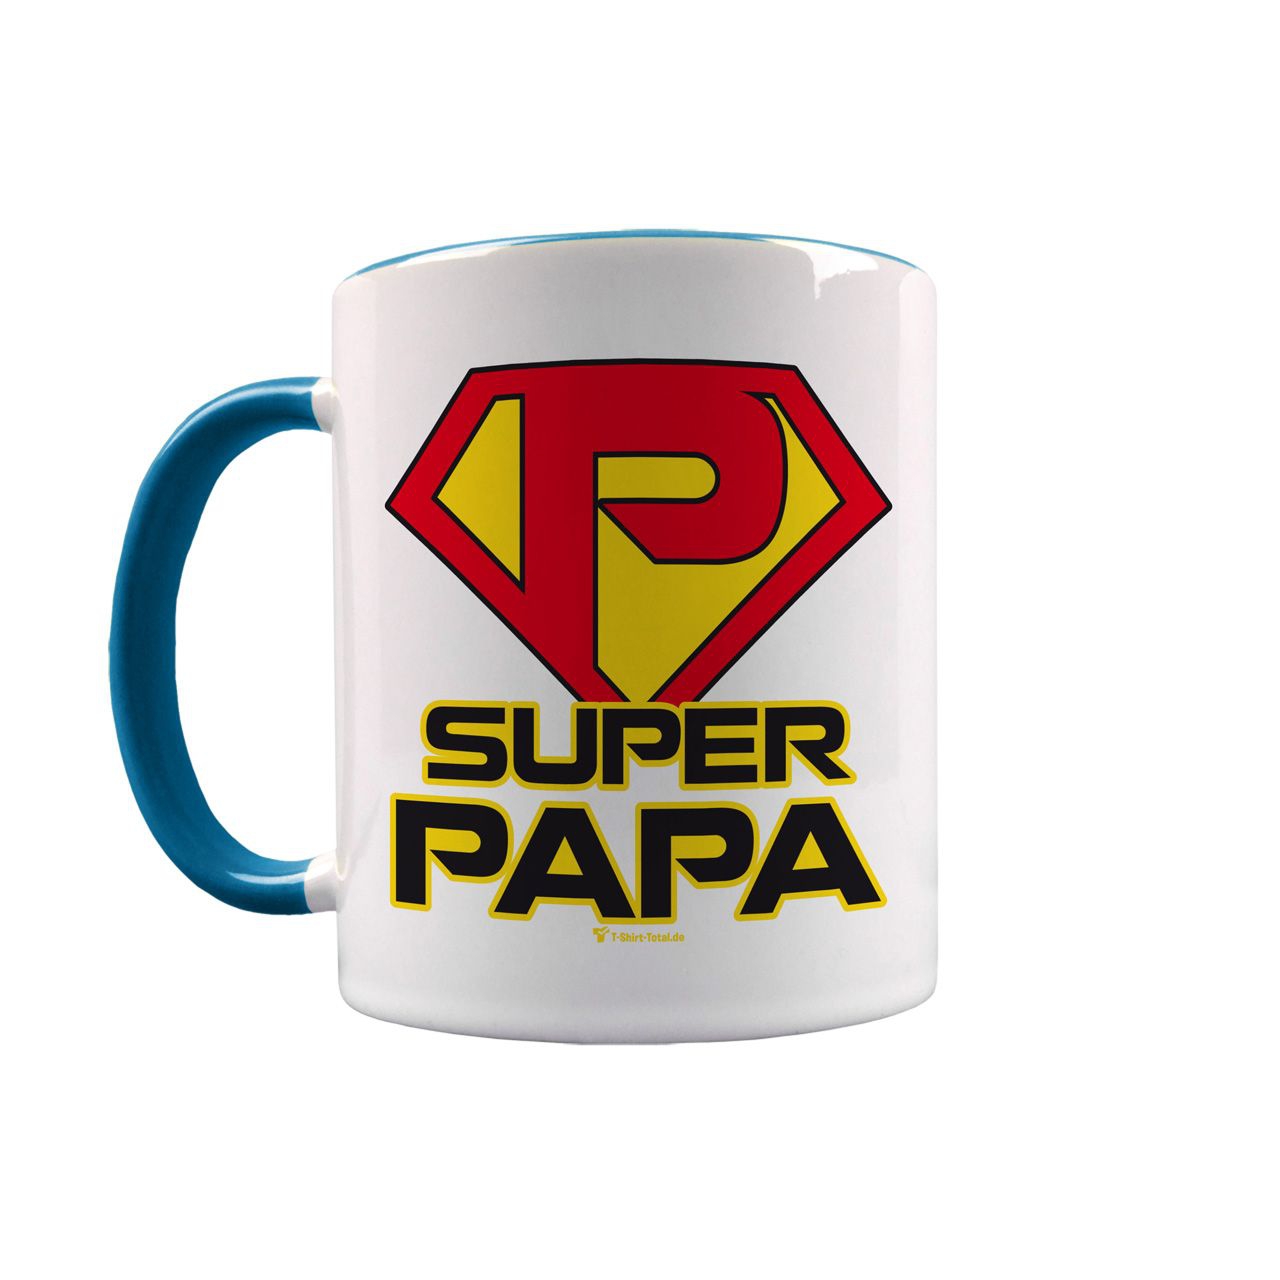 Super Papa Tasse türkis / weiß